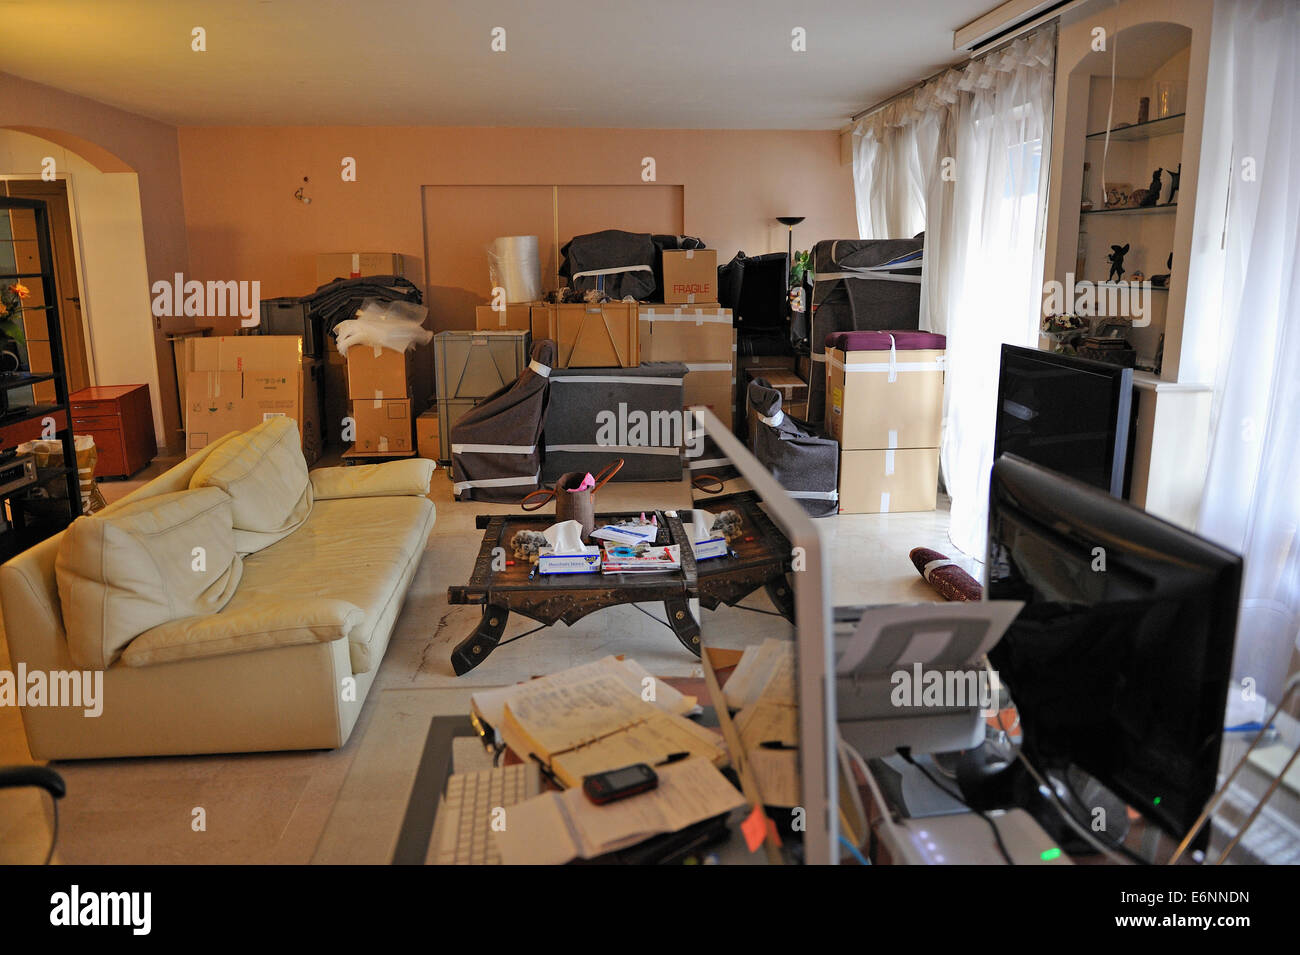 Déménagement maison - meubles et boîtes de carton dans la salle de séjour prêt pour l'éloignement, au cours d'un déplacement à domicile Banque D'Images